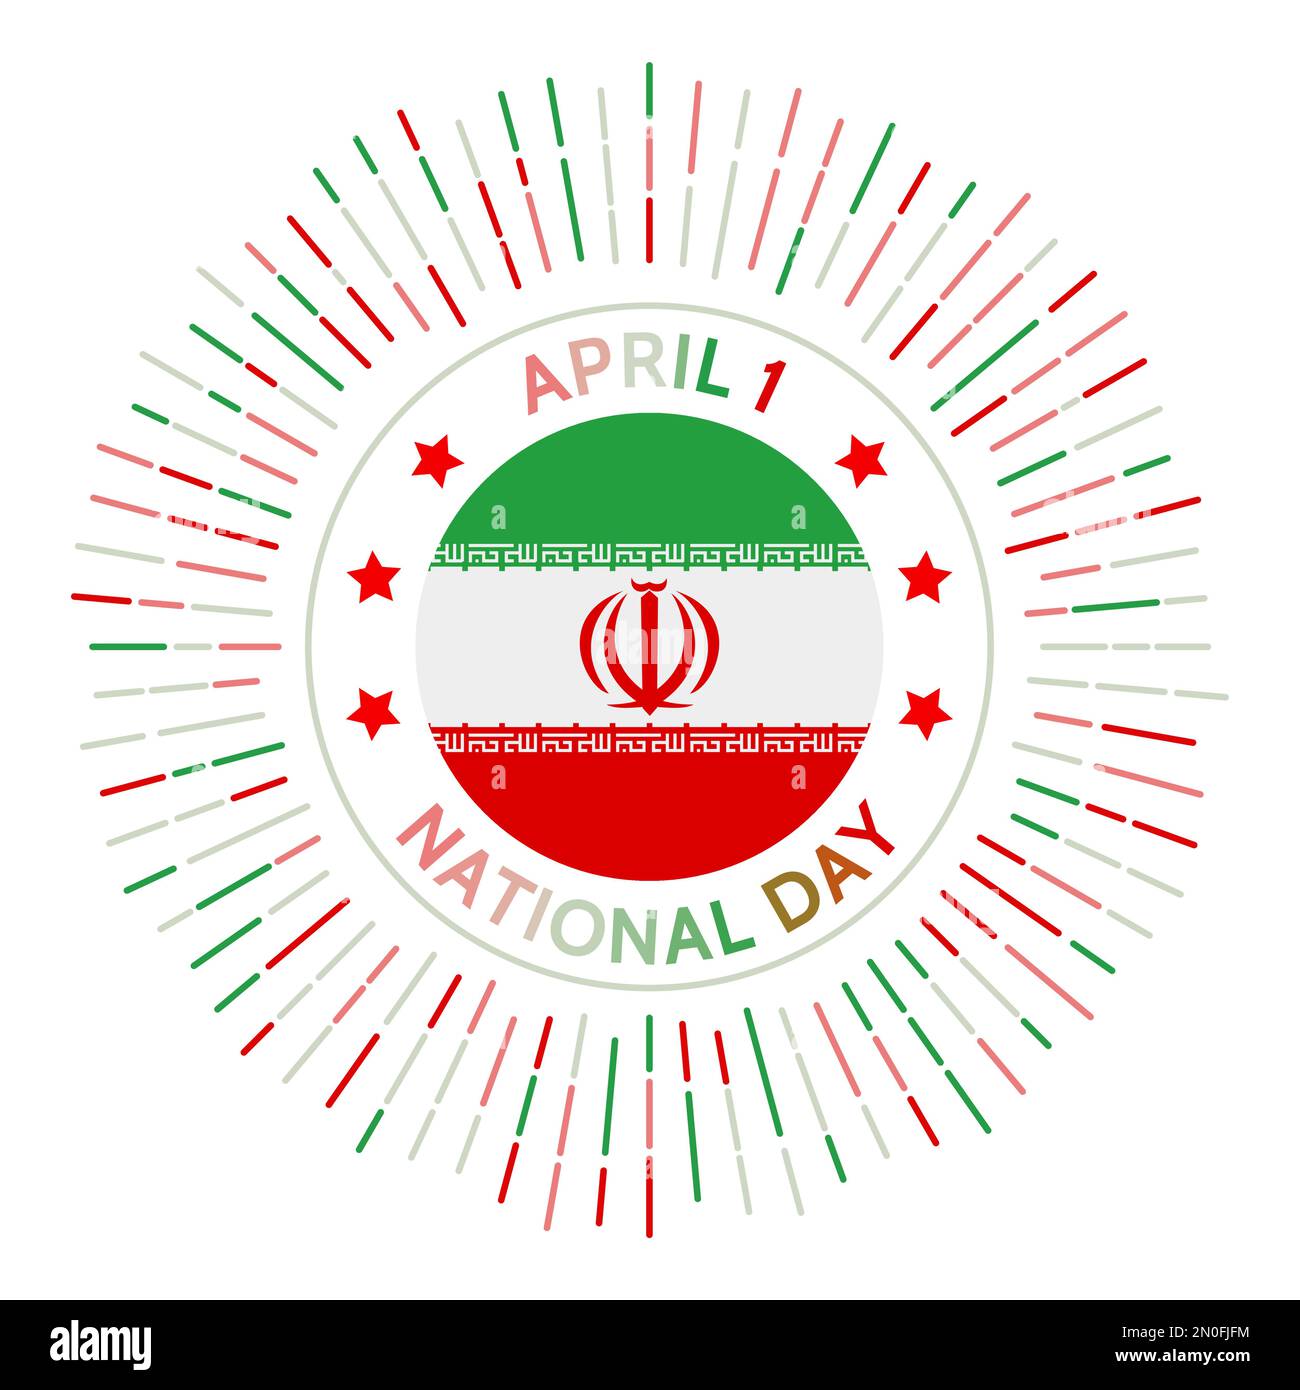 Insigne de la journée nationale de l'Iran. Après un référendum, l'Iran est officiellement devenu une république islamique en avril 1979. Célébré sur 1 avril. Illustration de Vecteur